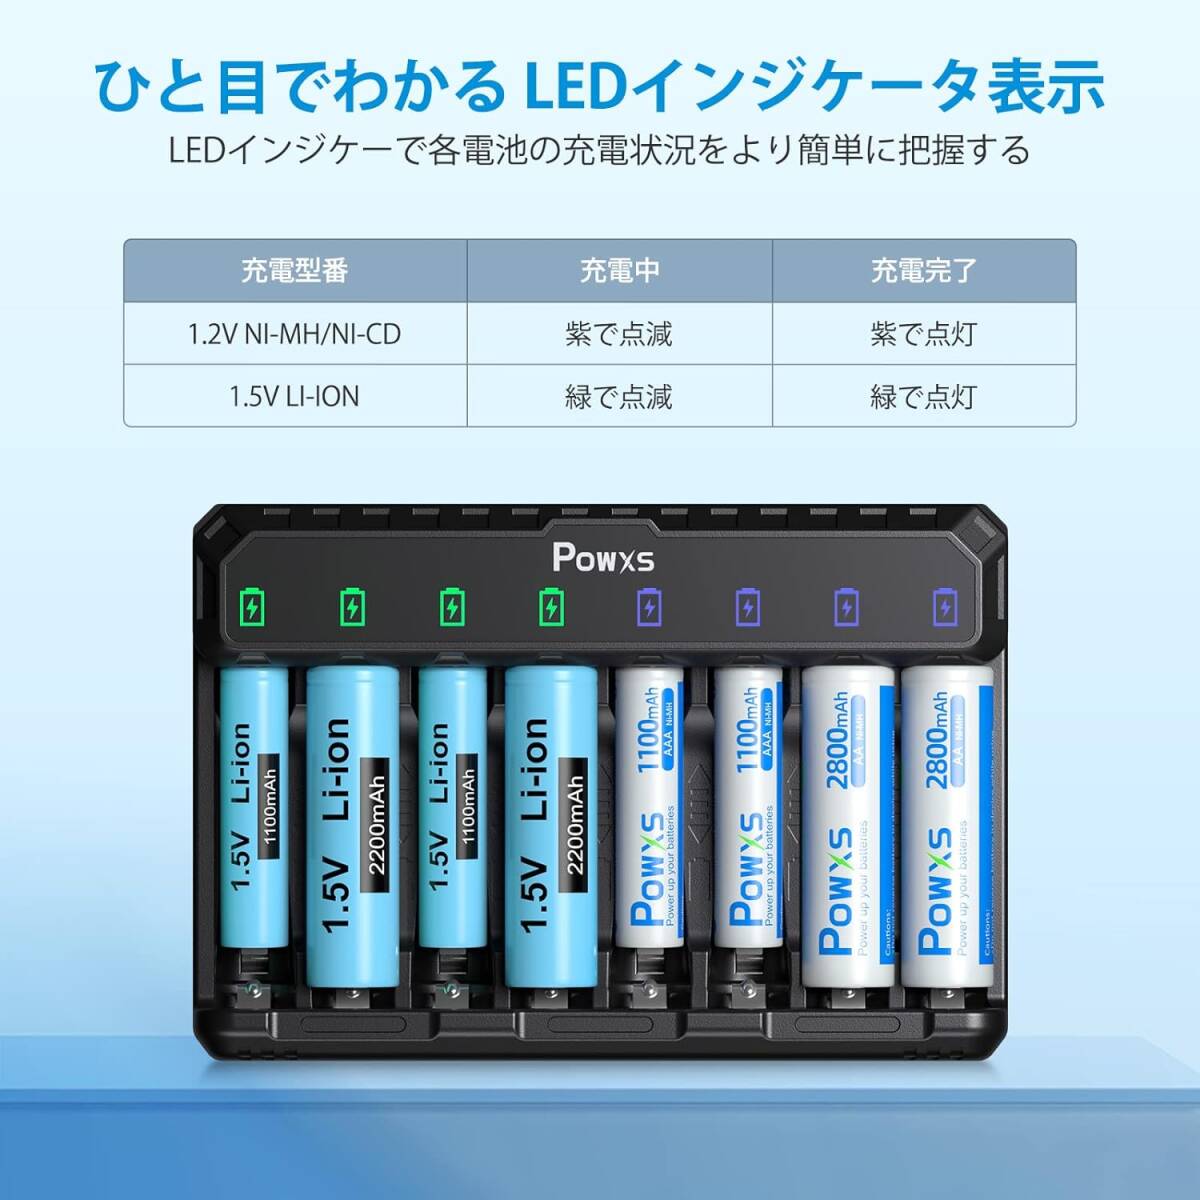 電池充電器 POWXS 急速電池充電器 1.2V ニッケル水素電池/1.5V リチウム電池 単3形・単4形に対応 8スロットで8本の画像3